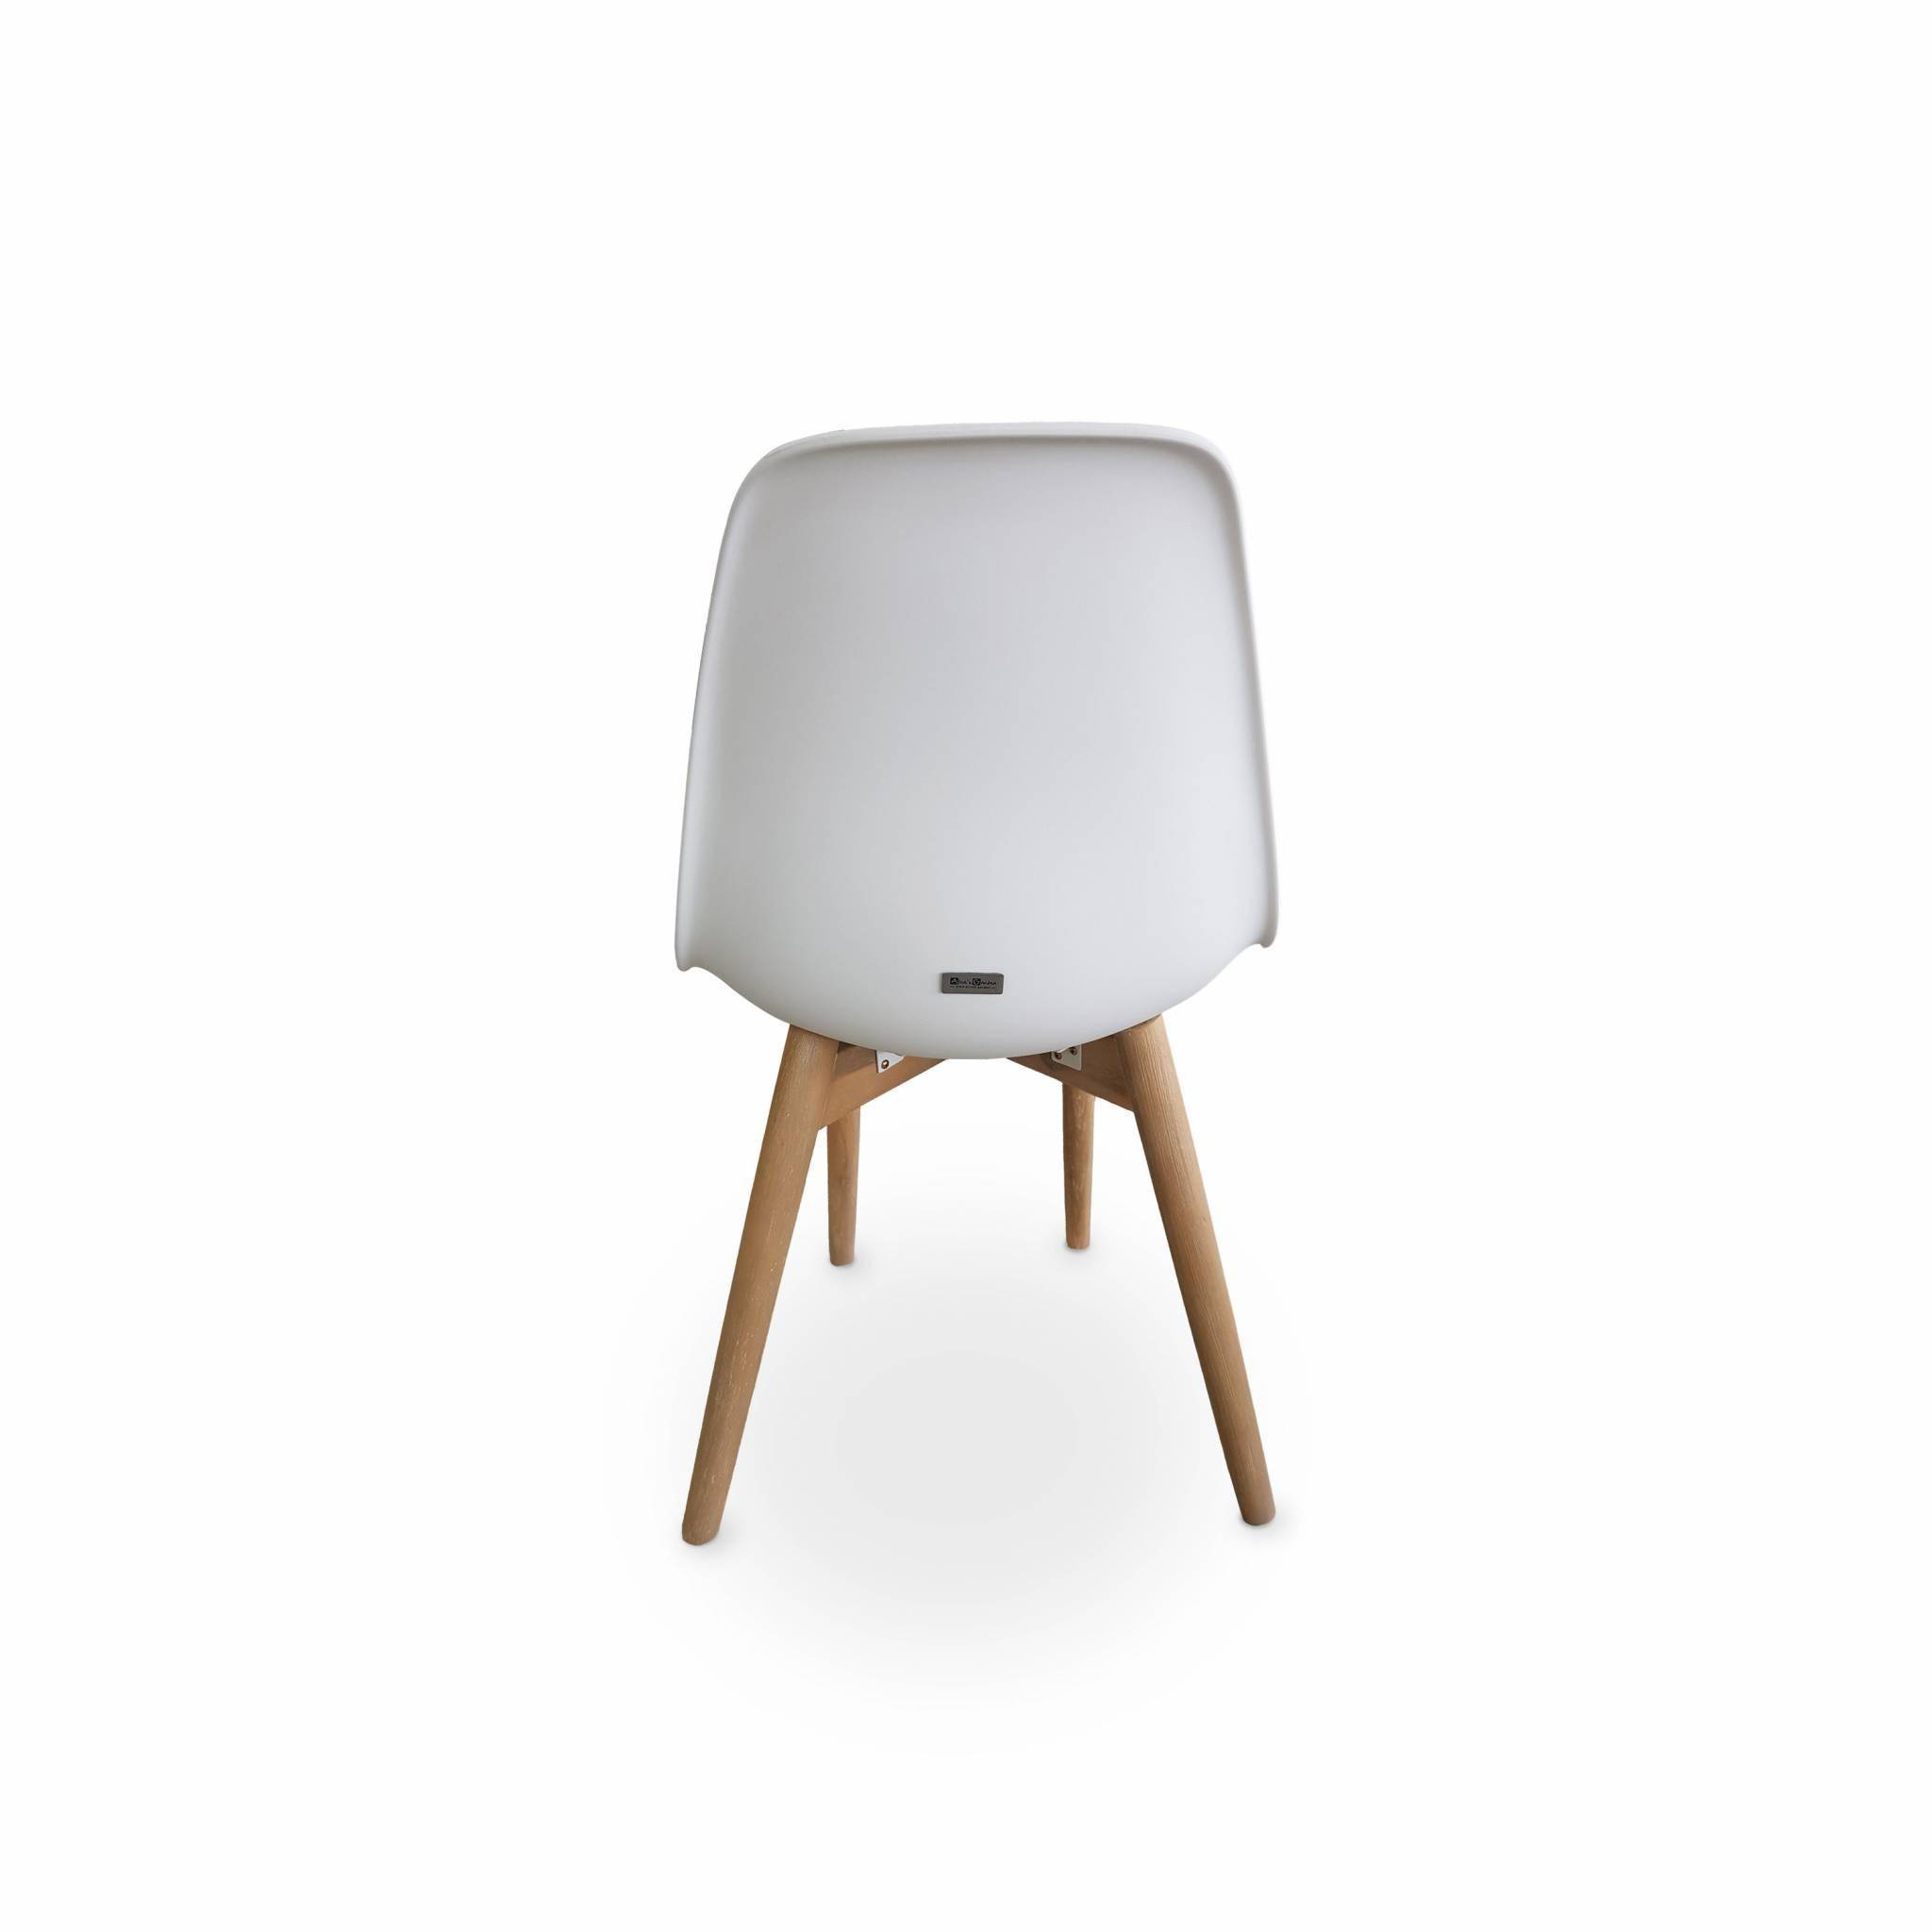 2er Set skandinavische Stühle Penida, aus Akazienholz und weißem Kunstharz gespritzt, innen/außen Photo3